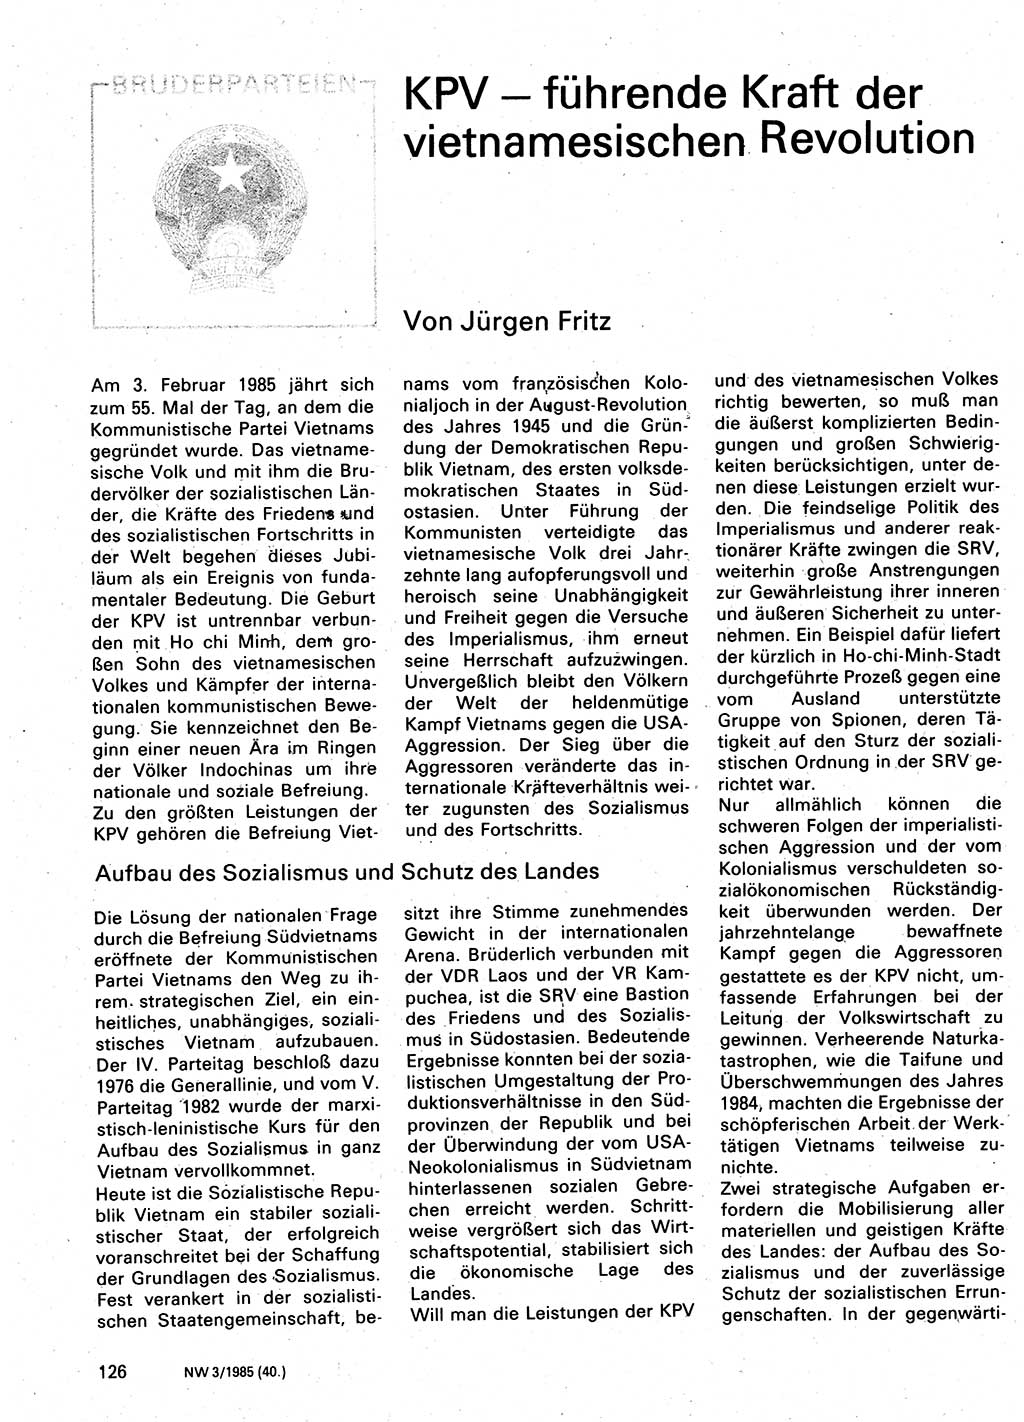 Neuer Weg (NW), Organ des Zentralkomitees (ZK) der SED (Sozialistische Einheitspartei Deutschlands) für Fragen des Parteilebens, 40. Jahrgang [Deutsche Demokratische Republik (DDR)] 1985, Seite 126 (NW ZK SED DDR 1985, S. 126)